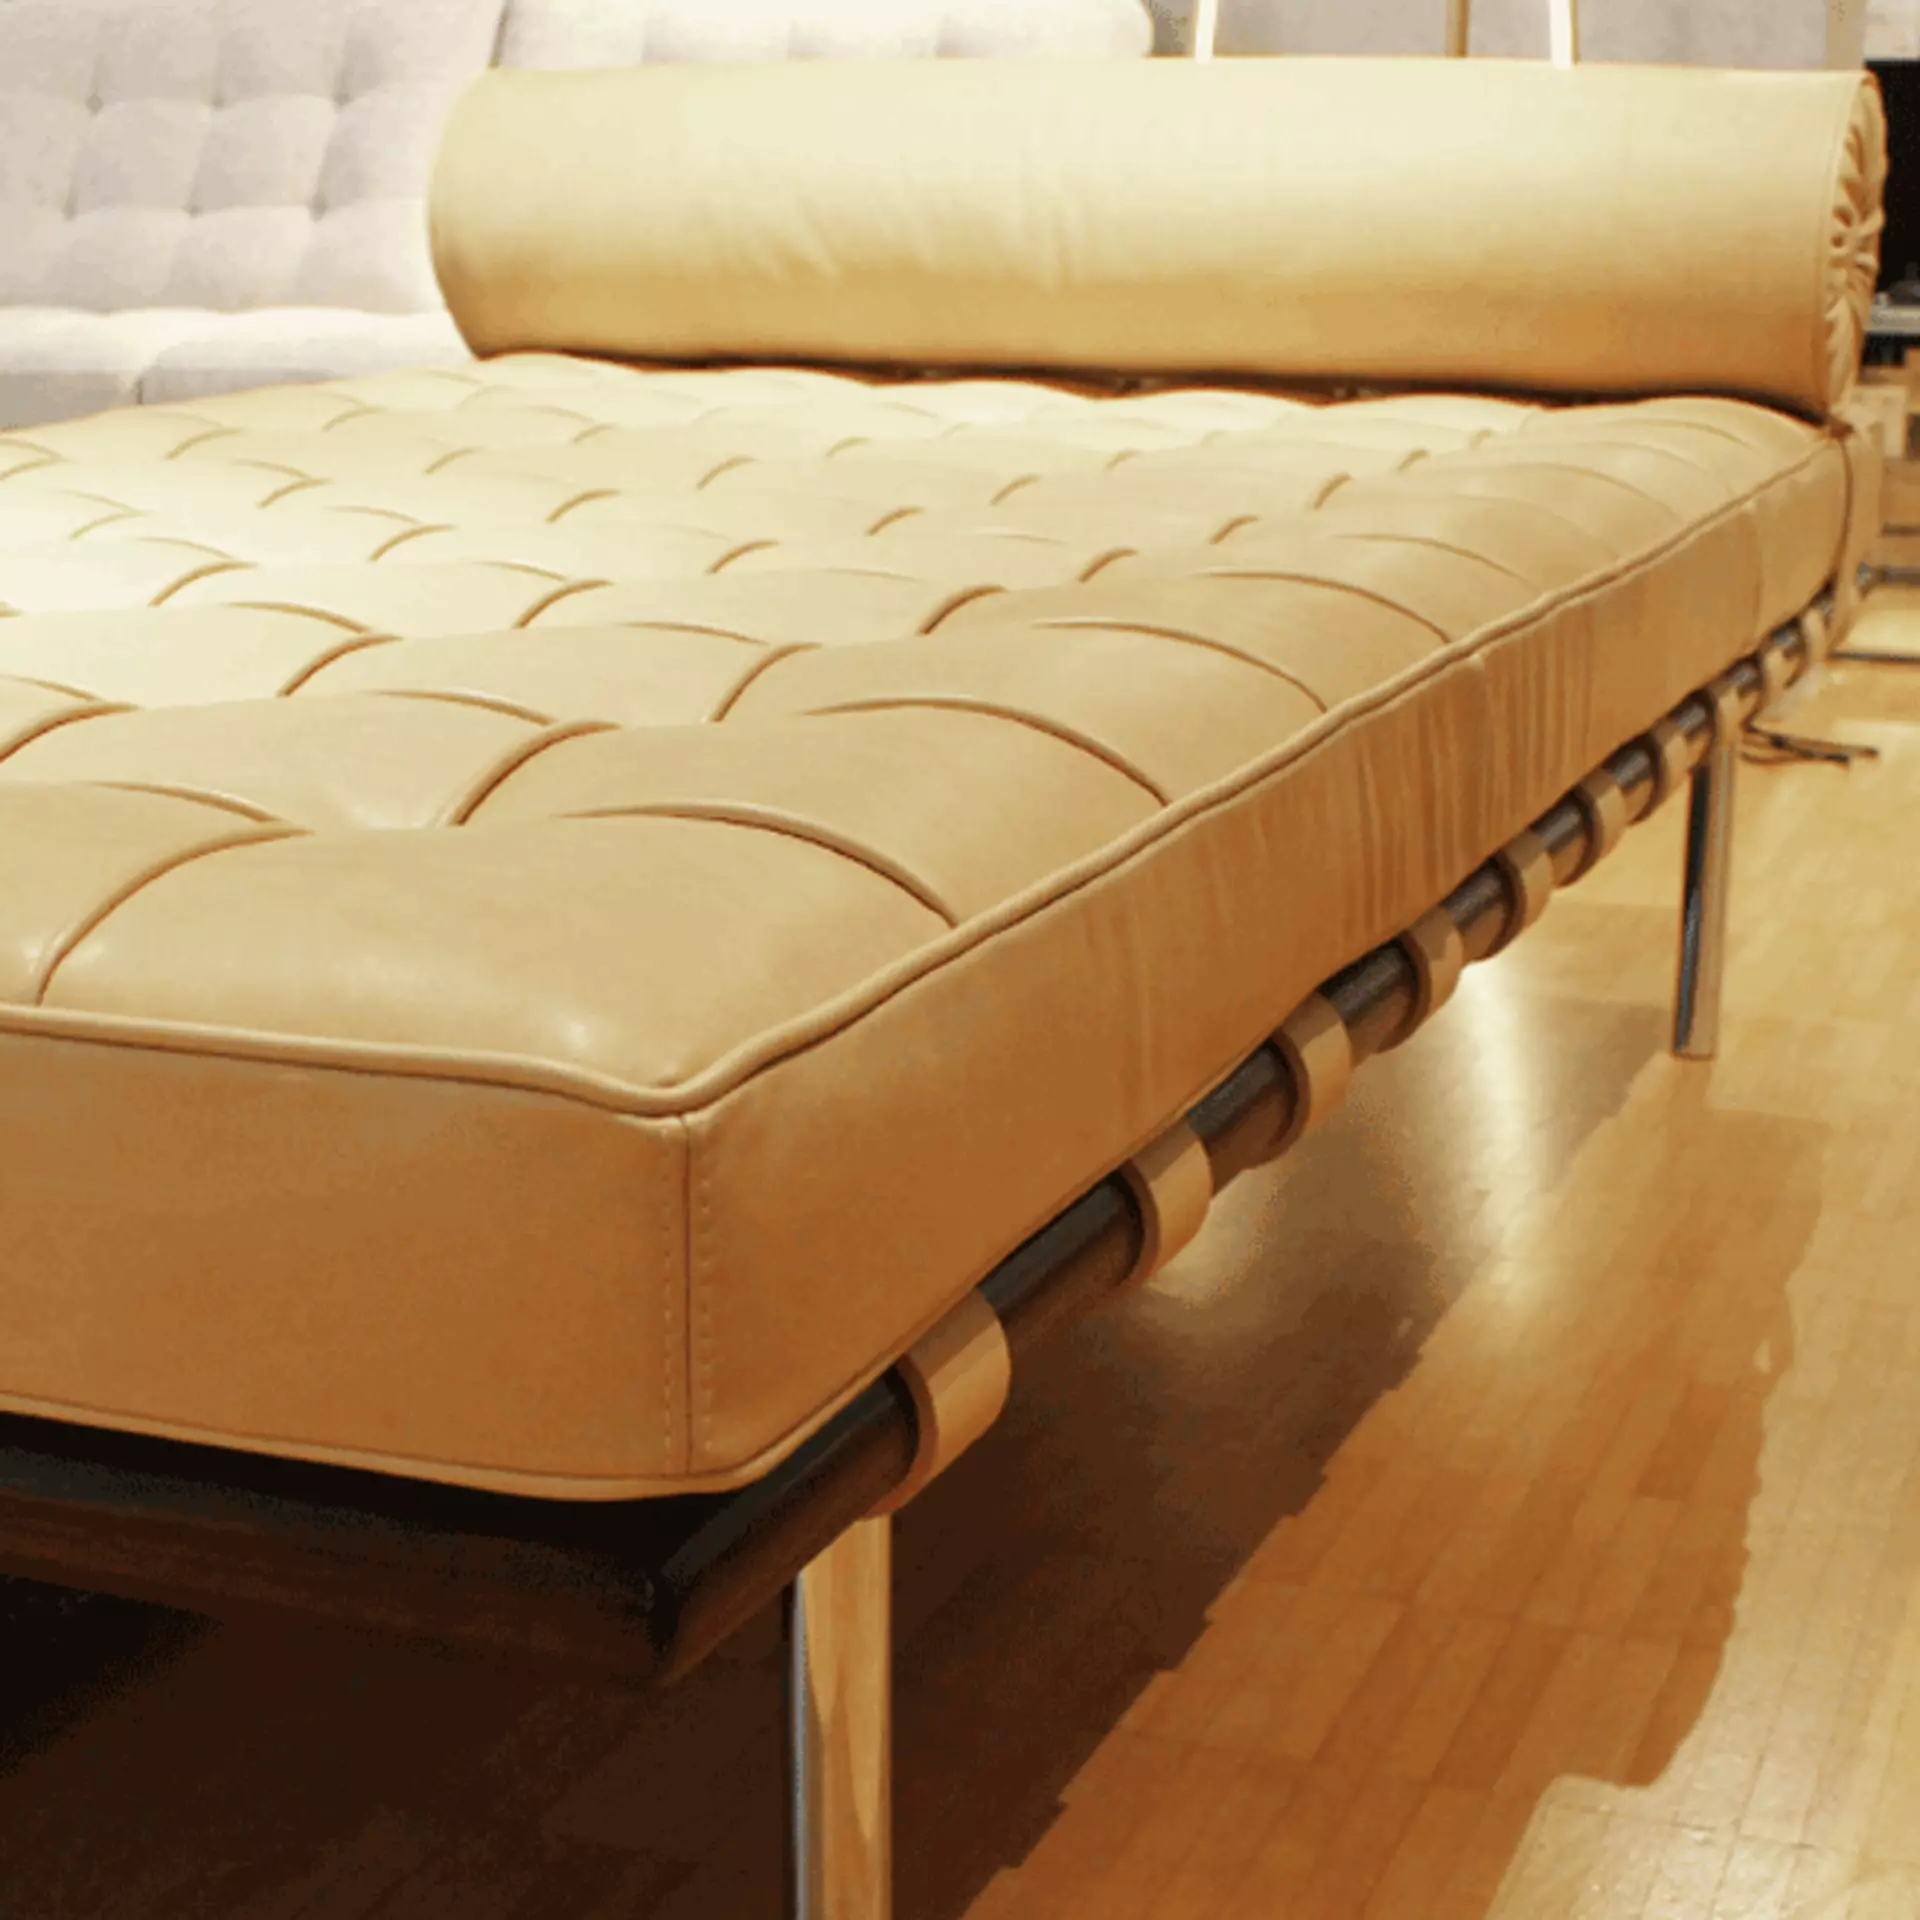 Luxuriöse Struktur - das aufwendige Nahtmuster im Leder des Barcelona Day Bed ist ein eleganter Hingucker